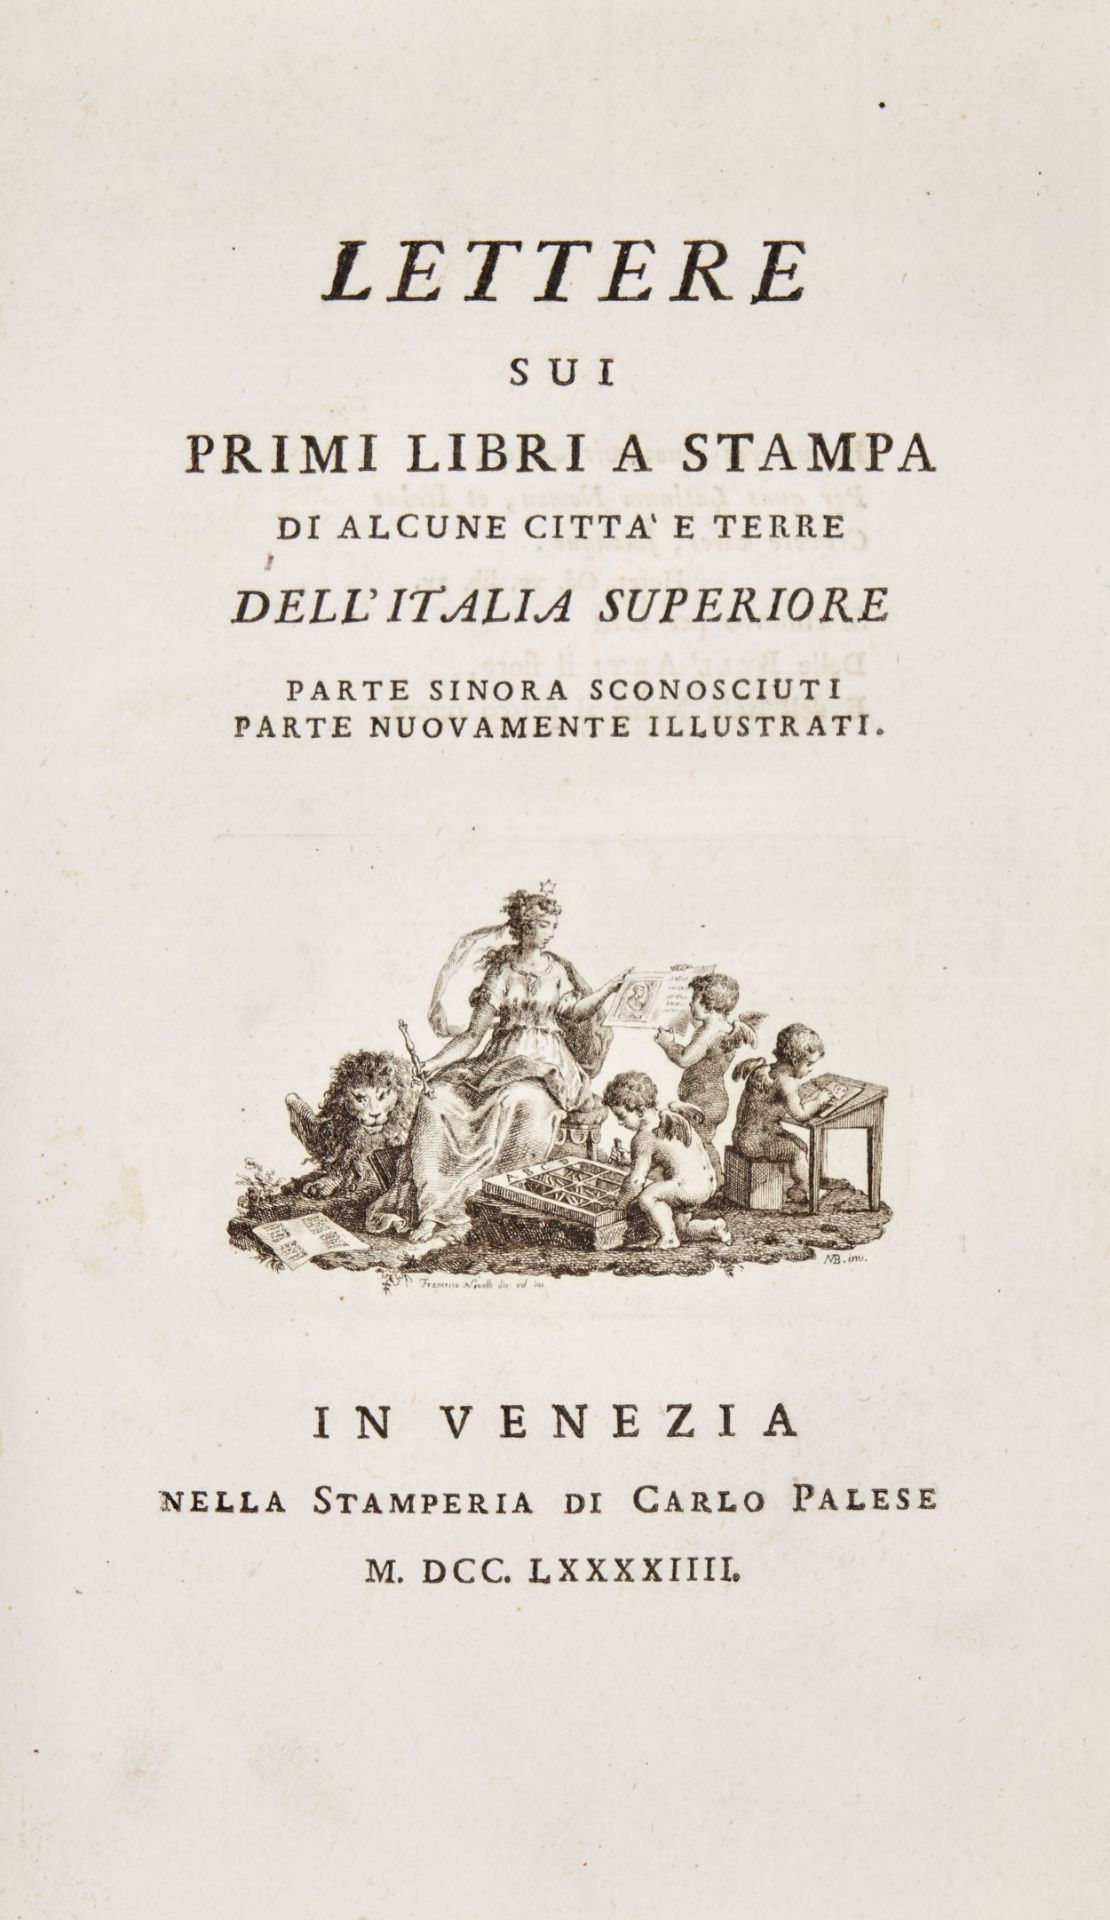 [BIBLIOPHILY] BONI, Mauro (1746-1817). Lettere sui primi libri a stampa di alcune città e terre